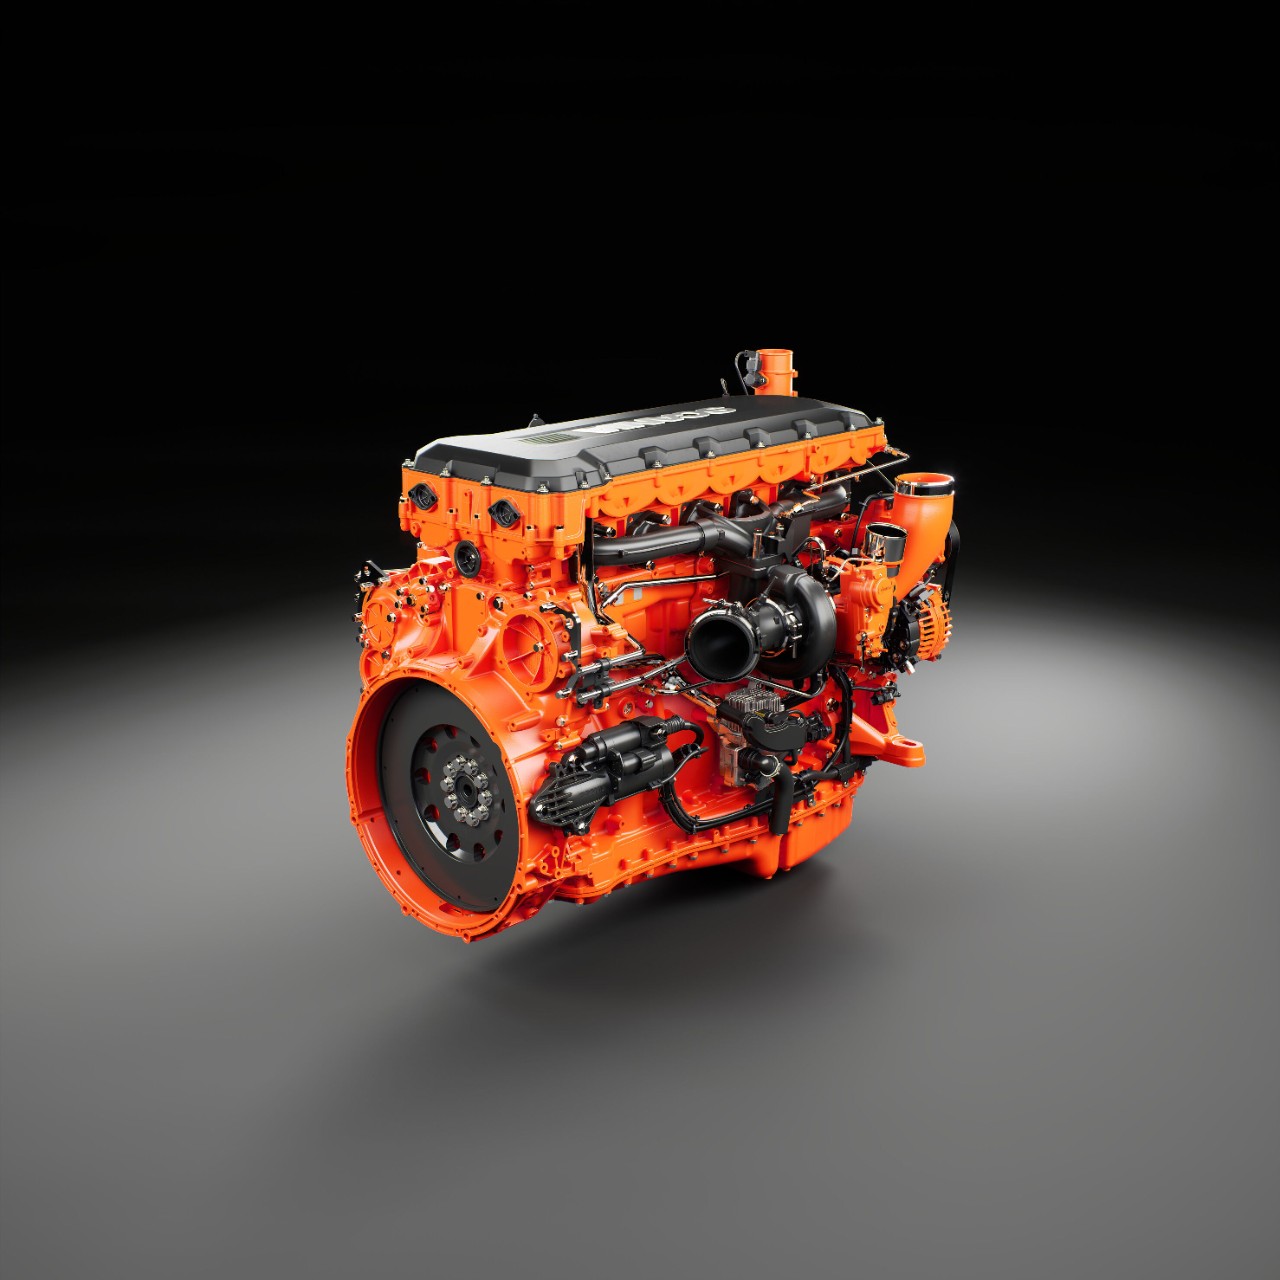 Schwarz-oranger Scania Motor für kundenspezifische Antriebslösungen